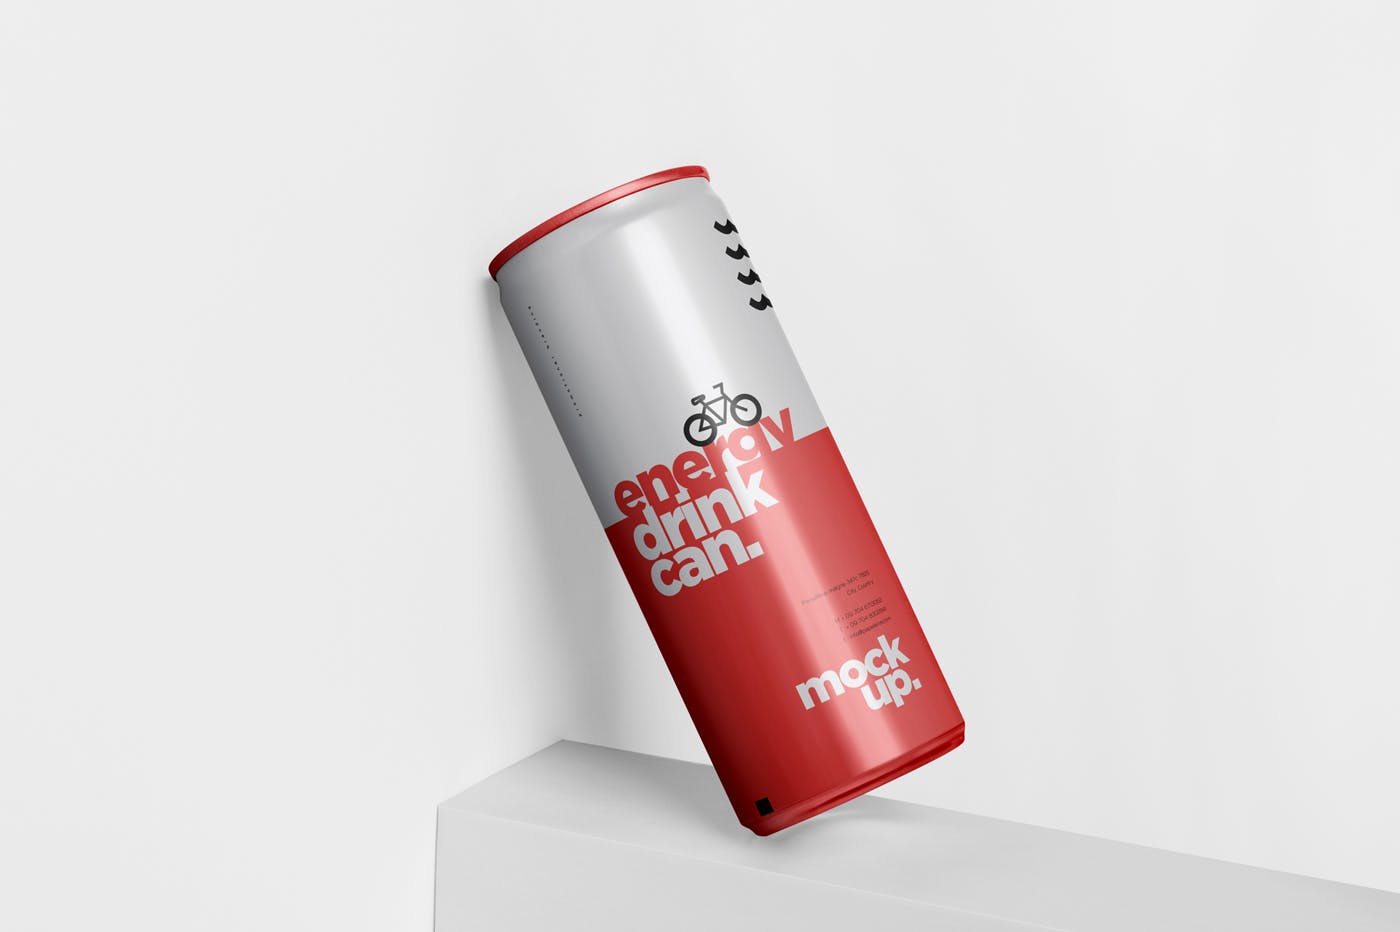 能量饮料易拉罐罐头外观设计素材中国精选模板 Energy Drink Can Mock-Up – 250 ml插图(3)